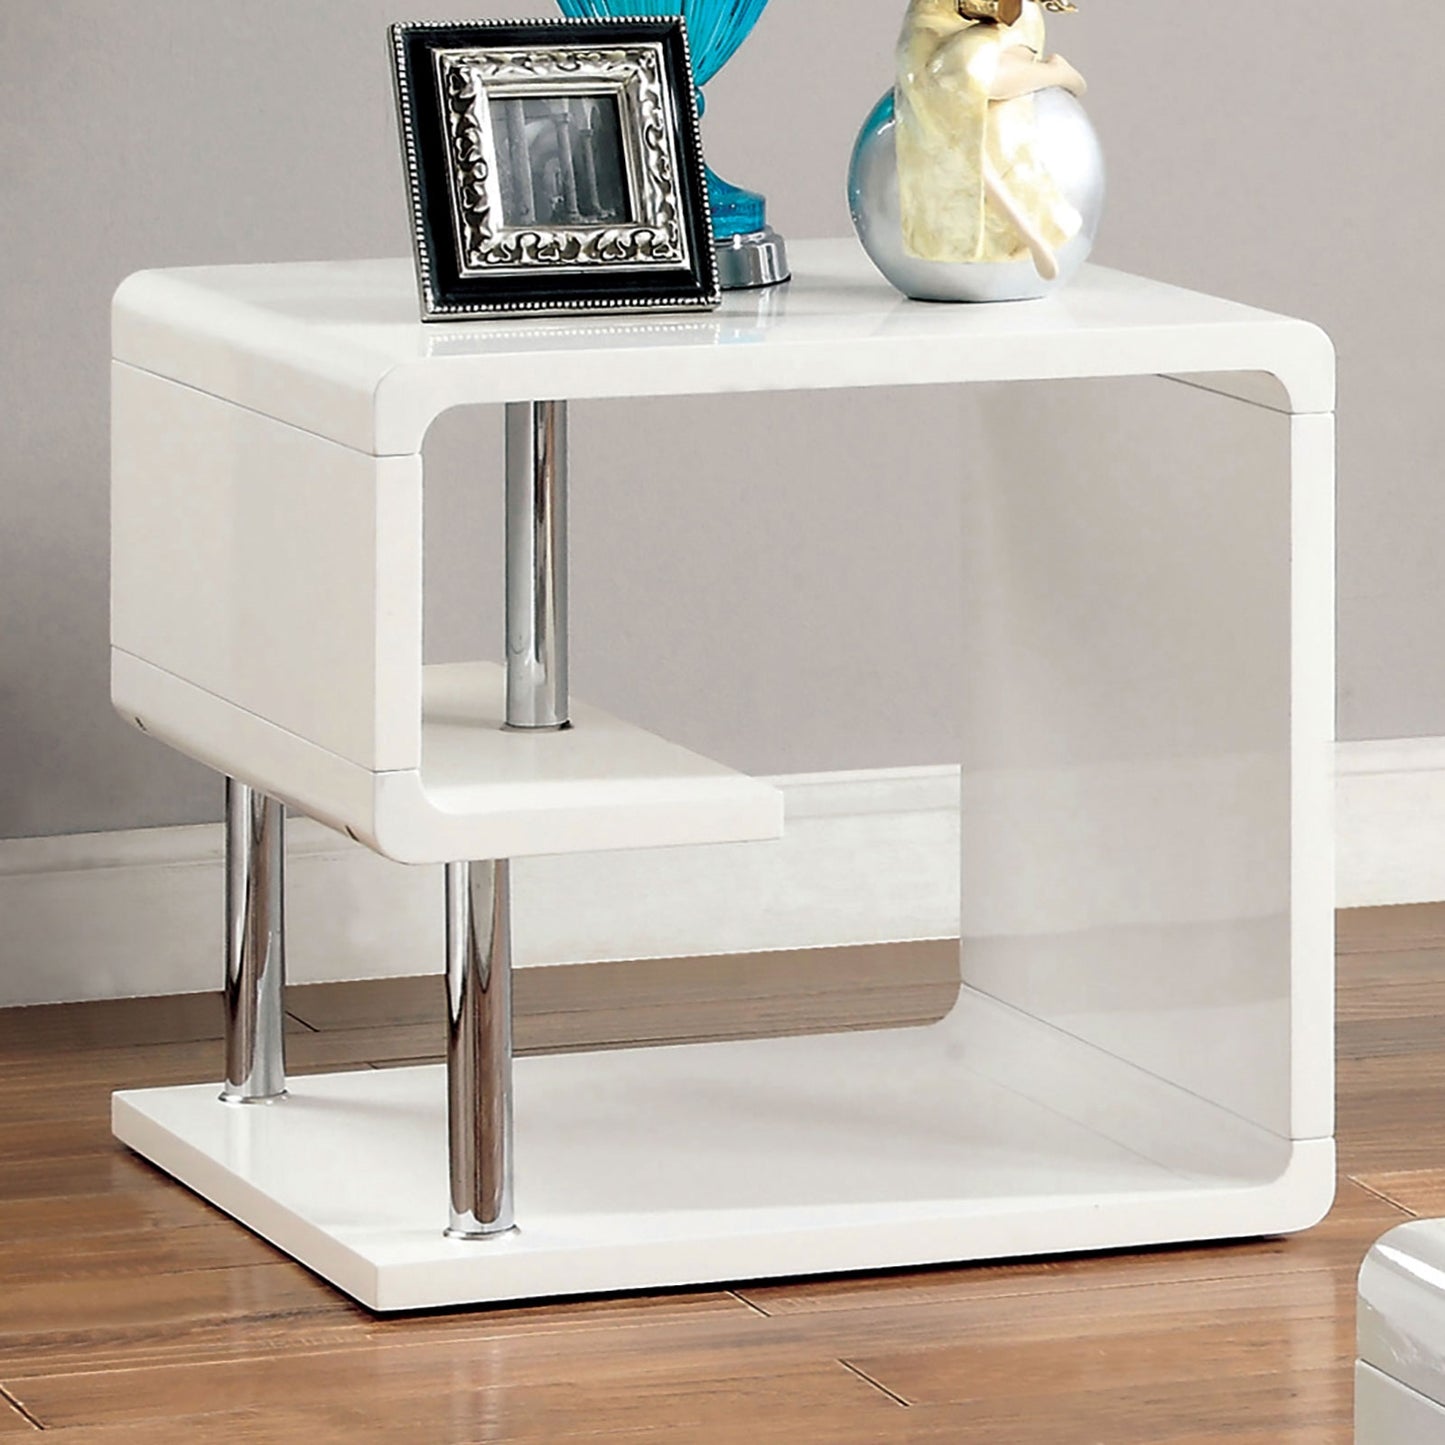 Ninove Modern High Gloss White & Chrome End Table